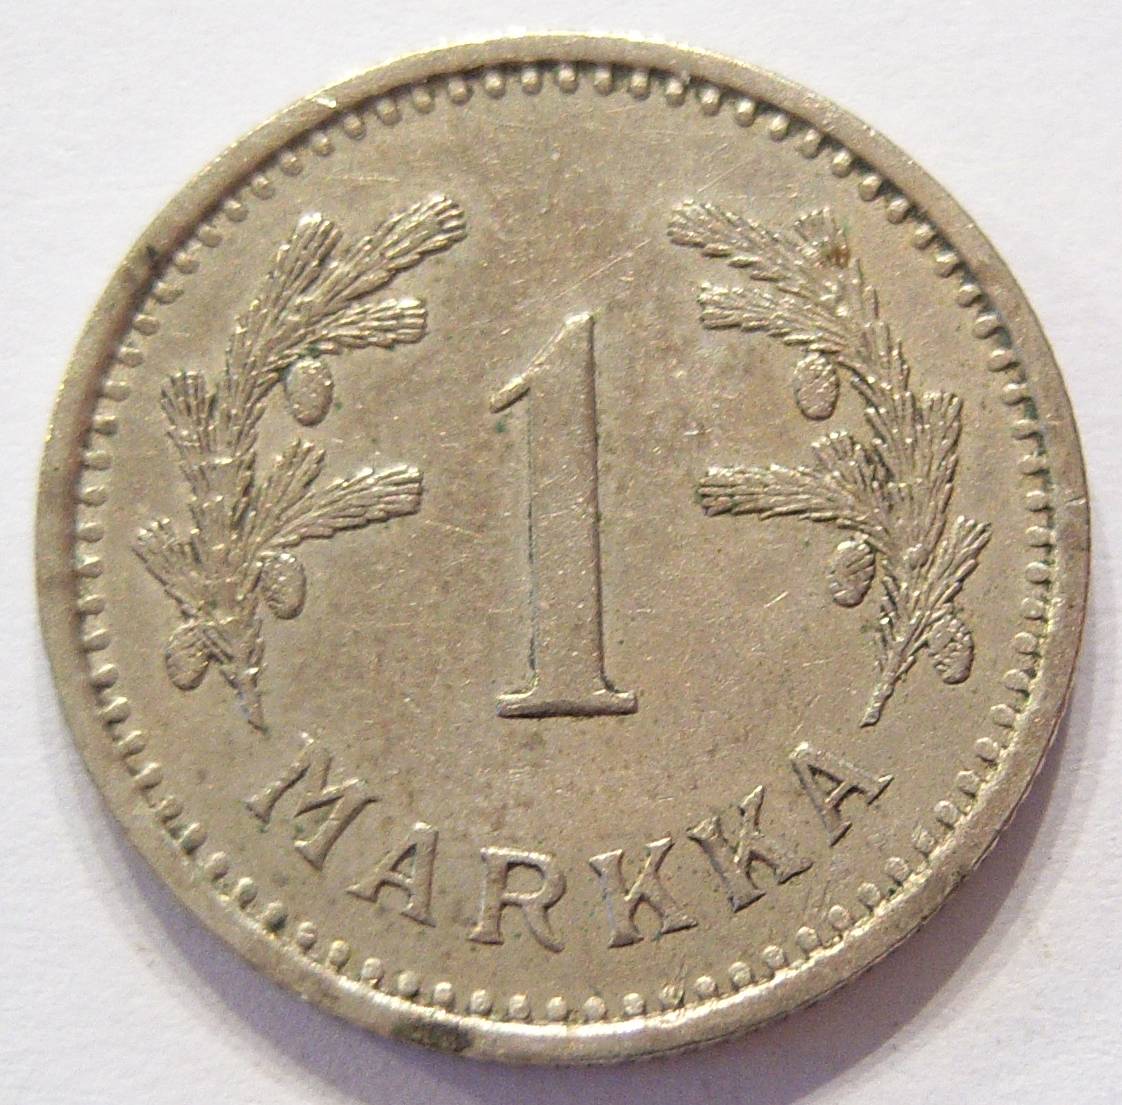  Finnland 1 Markka 1937   